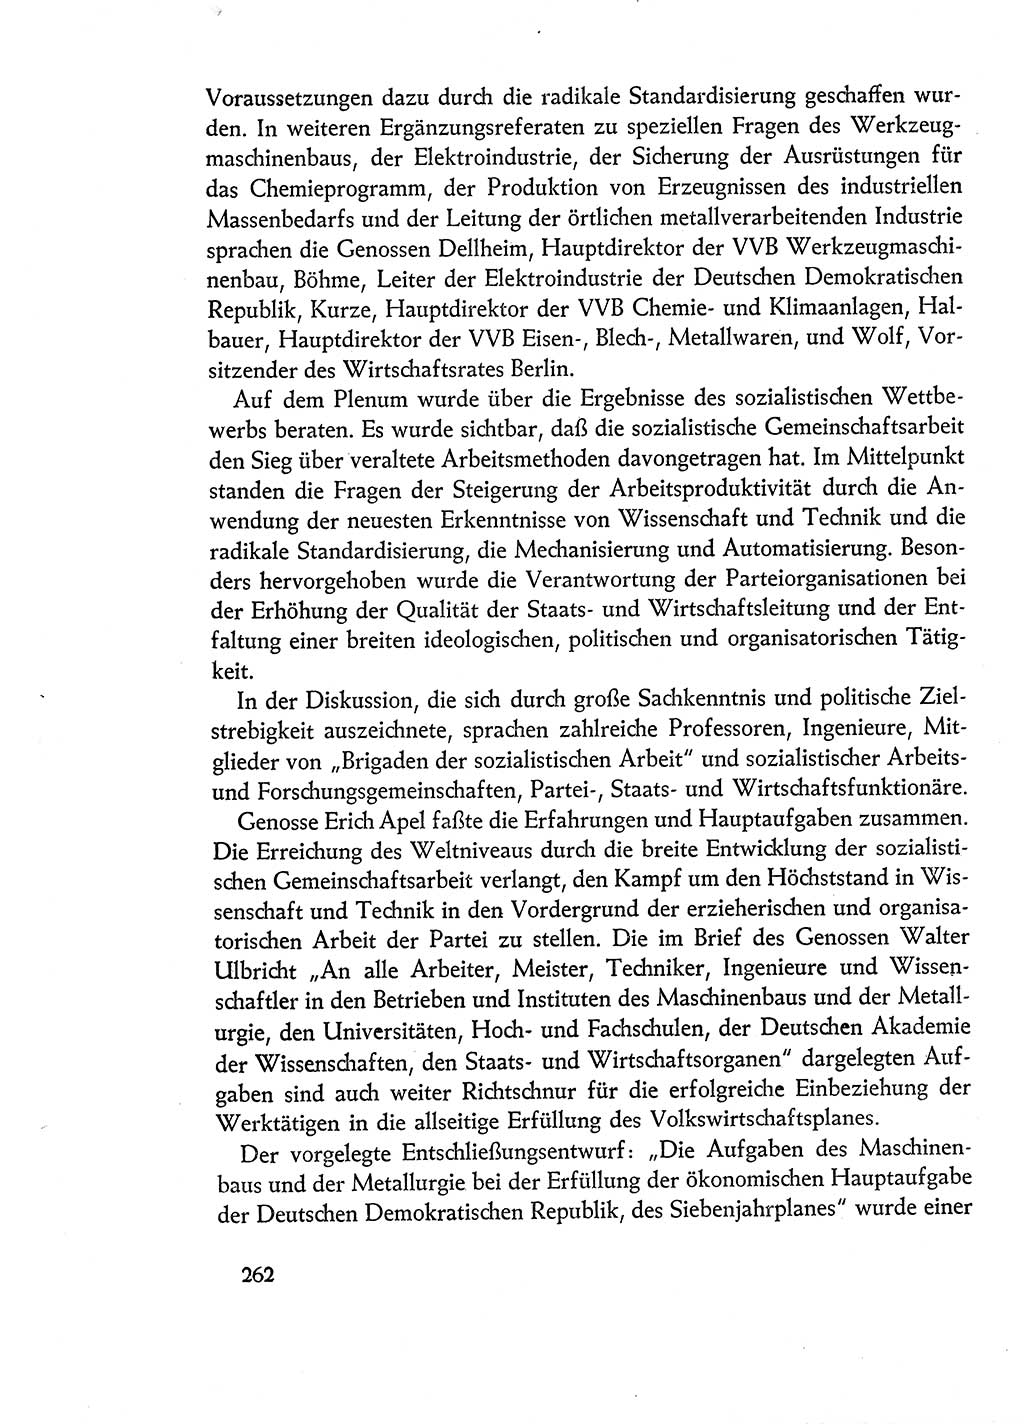 Dokumente der Sozialistischen Einheitspartei Deutschlands (SED) [Deutsche Demokratische Republik (DDR)] 1960-1961, Seite 262 (Dok. SED DDR 1960-1961, S. 262)